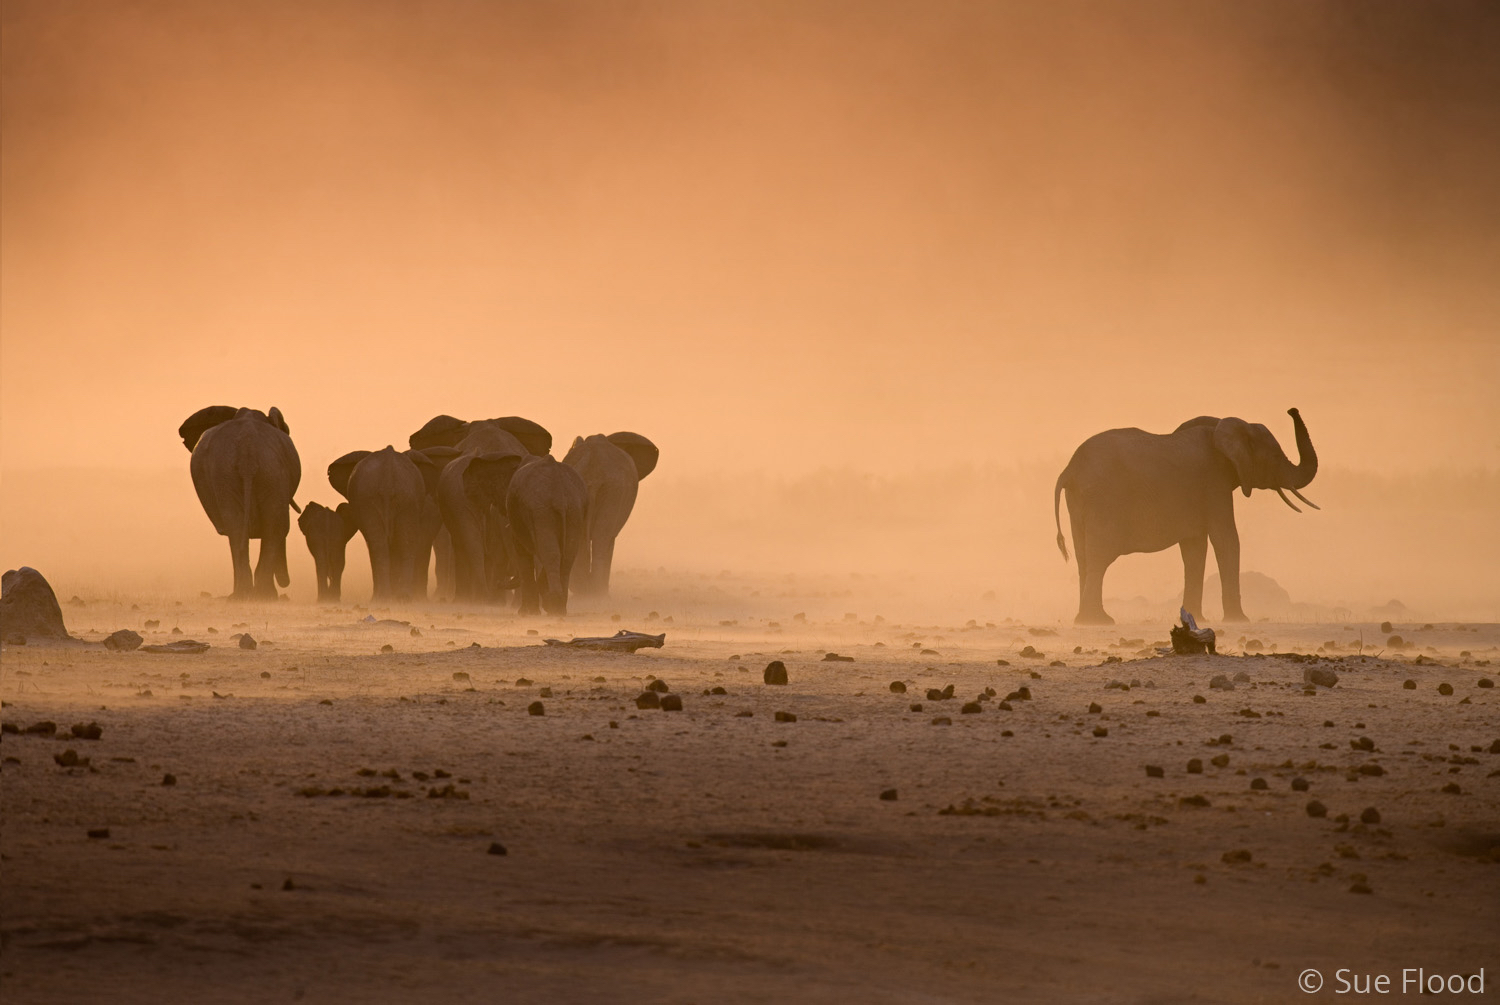 Elephant herd at sunset in dust storm, Hwange National Park, Zimbabwe